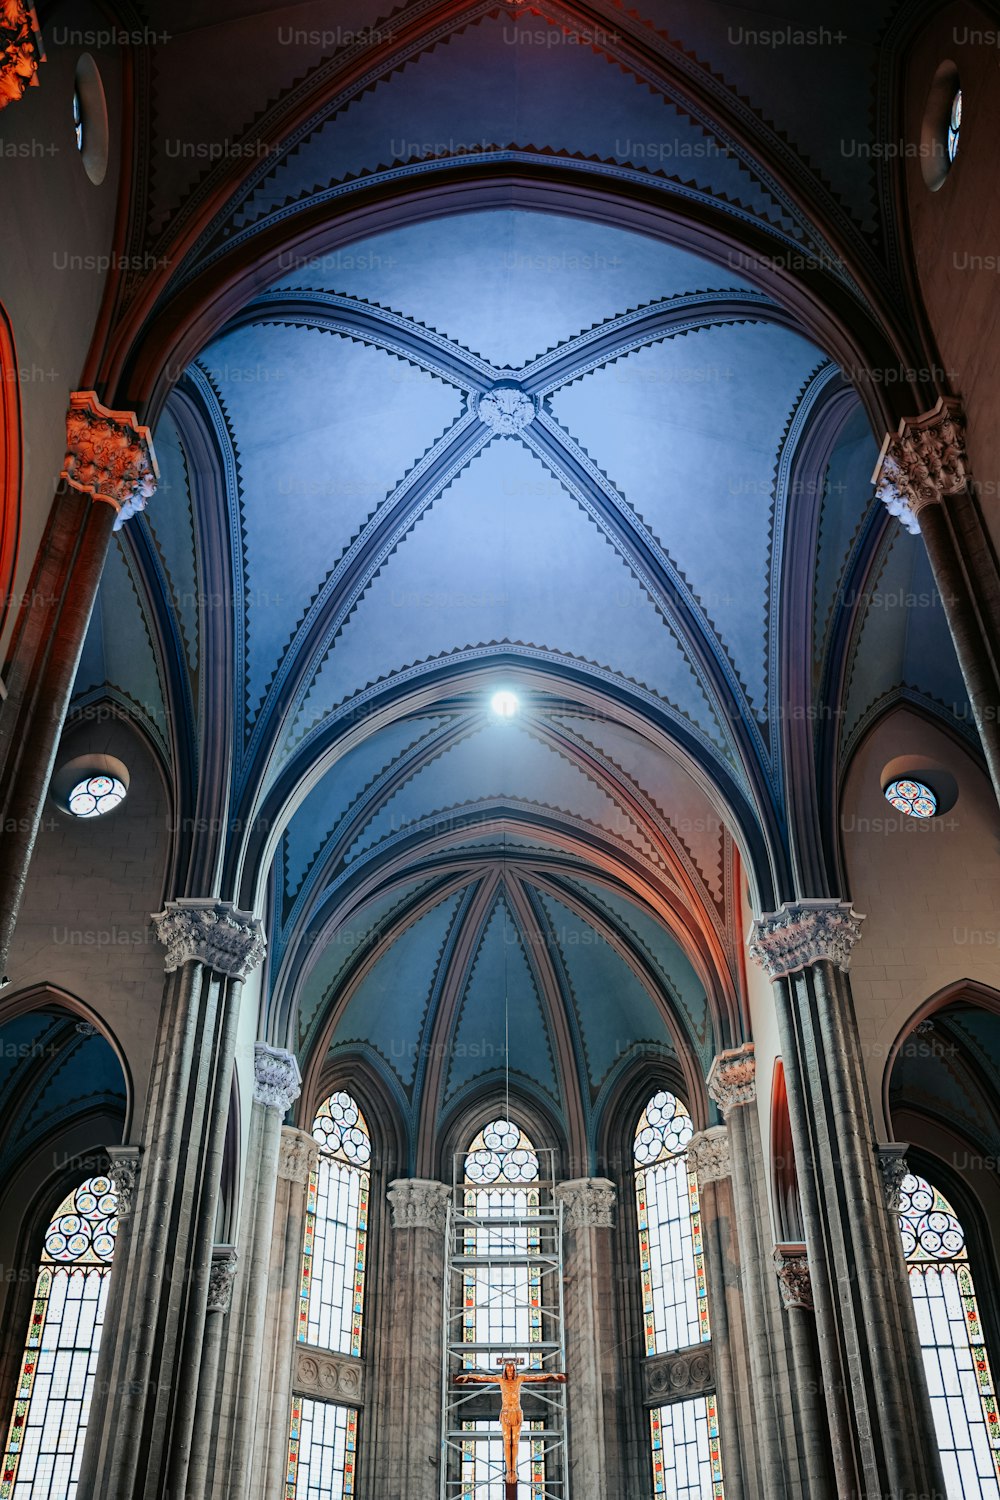 Una grande cattedrale con alti soffitti a volta e vetrate colorate